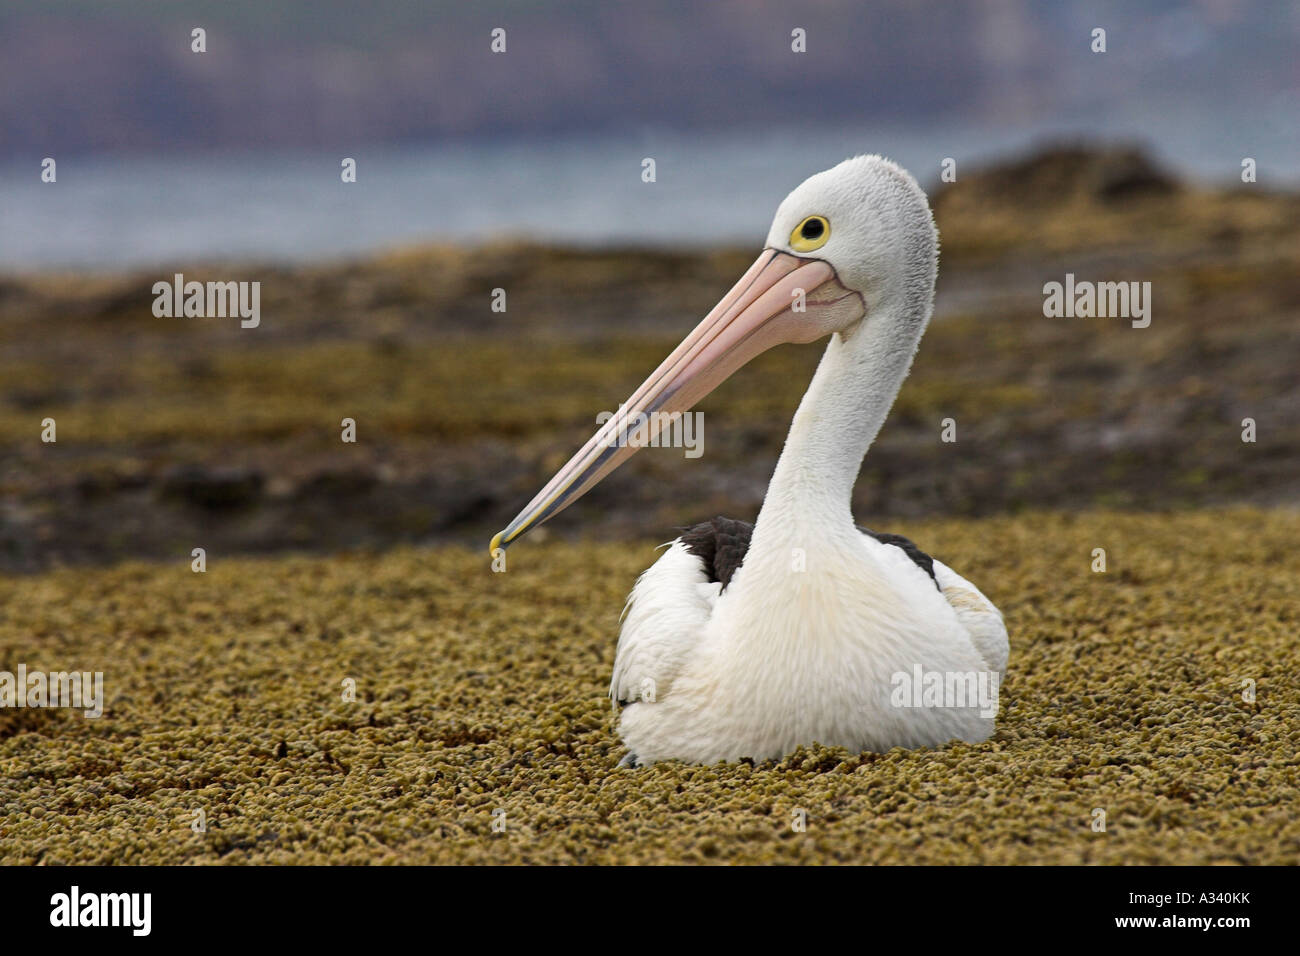 australian pelican, pelecanus conspicillatus, Stock Photo